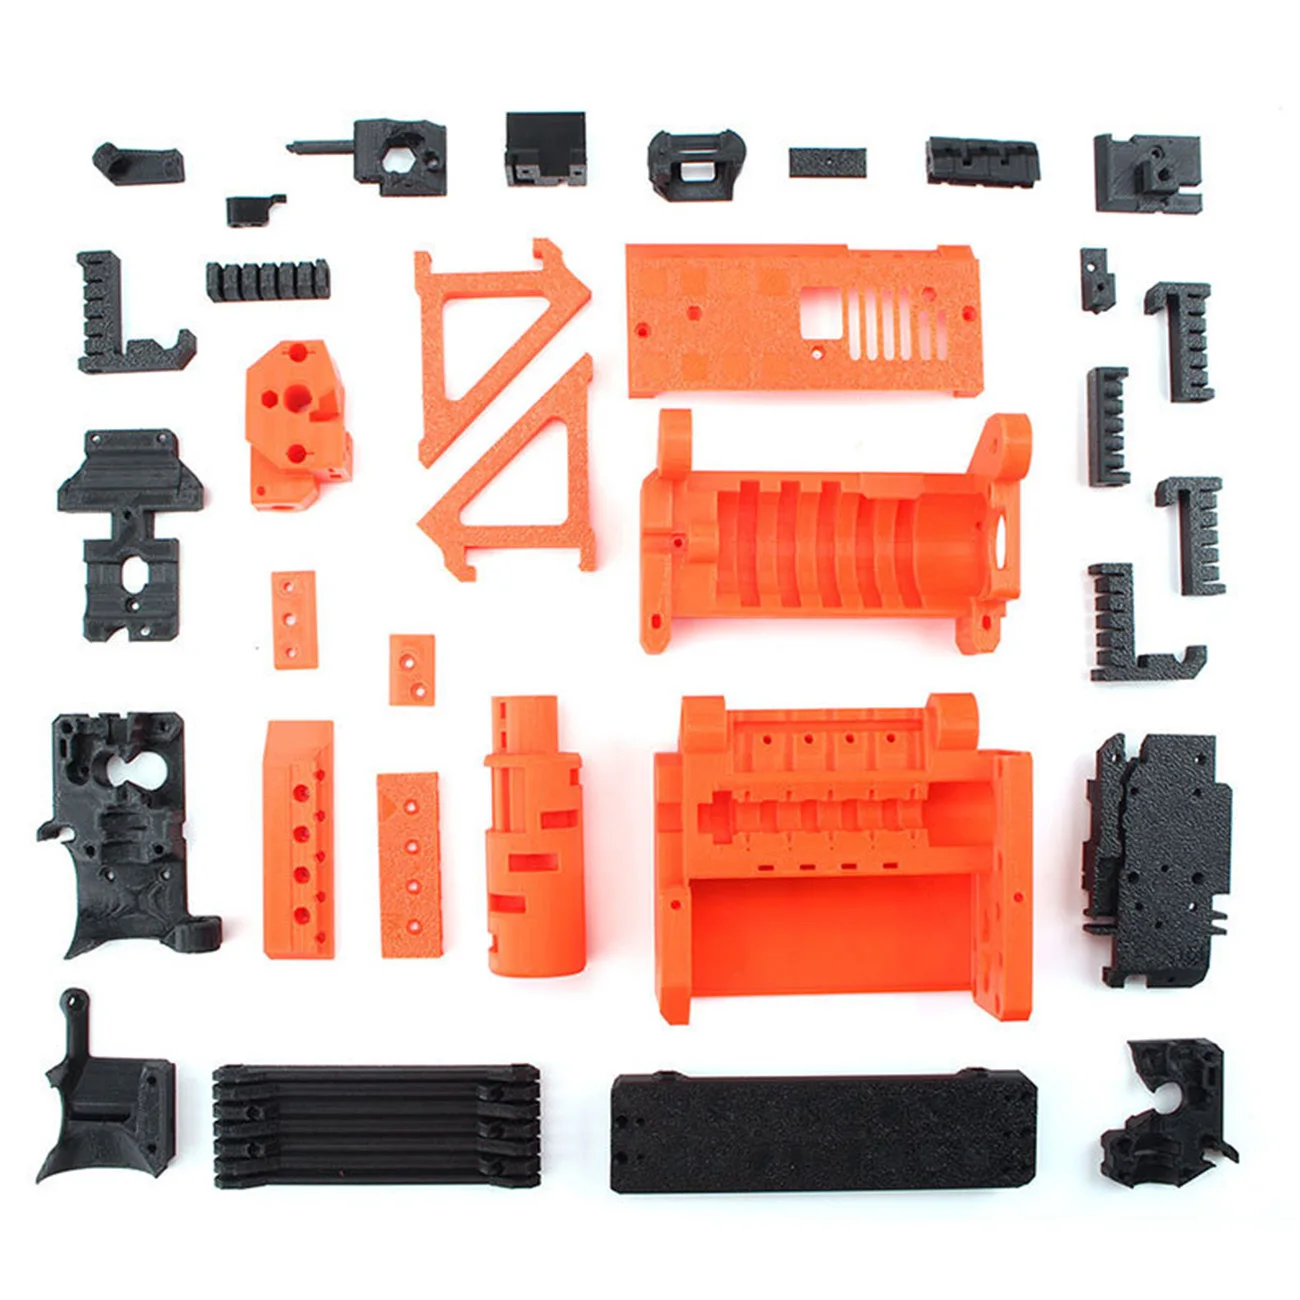 

Комплект аксессуаров для 3D-принтера, ударопрочные материалы ПЭТГ + набор для обновления скребка для серии Prusa i3 MK3/3S MMU2S